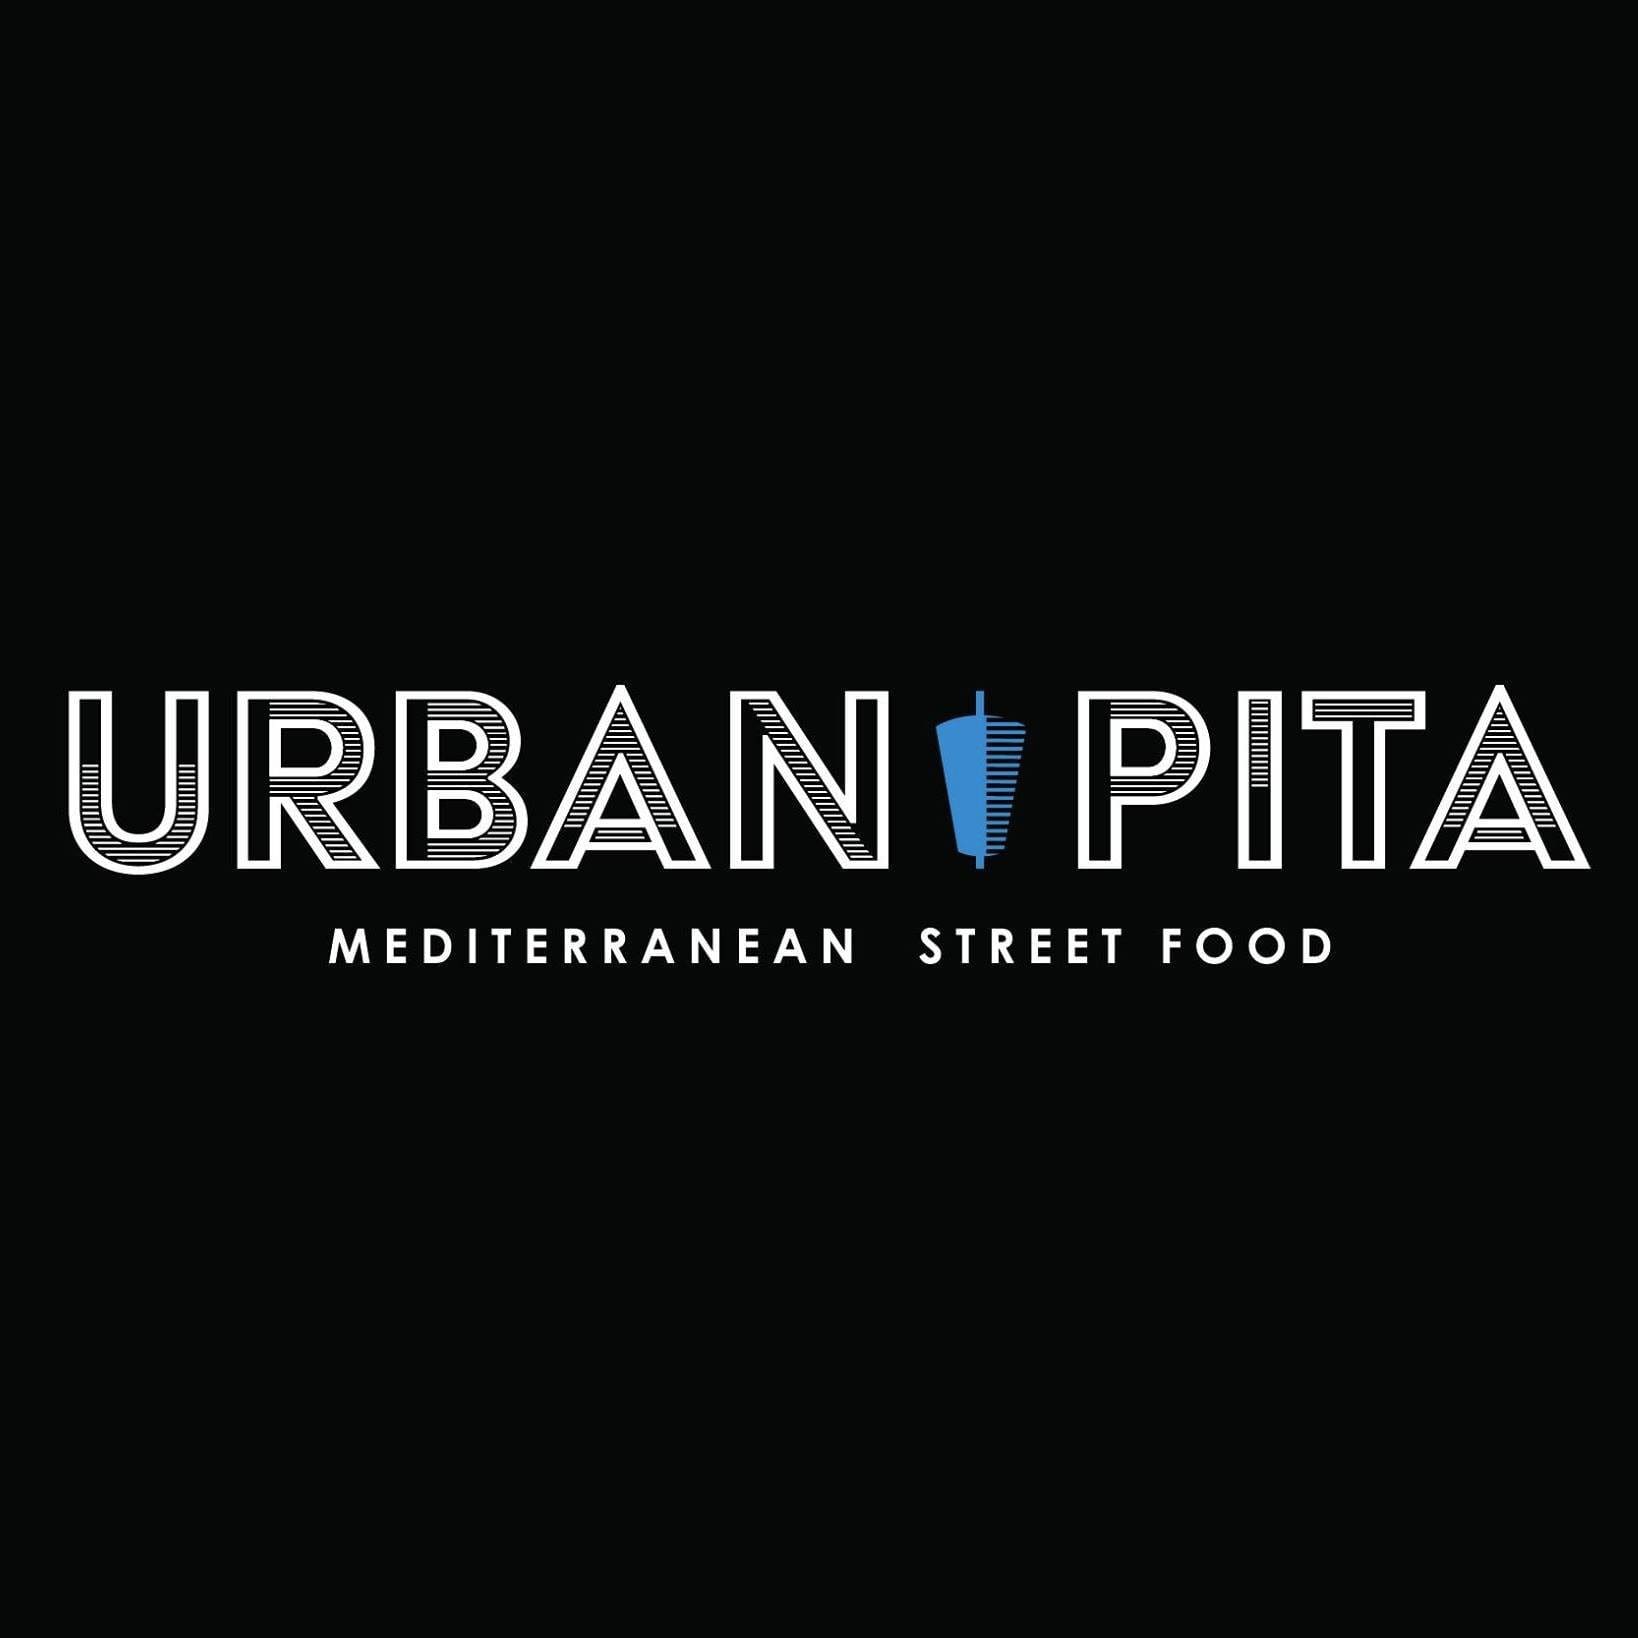 TJF2021 Urban Pita Logo Blk